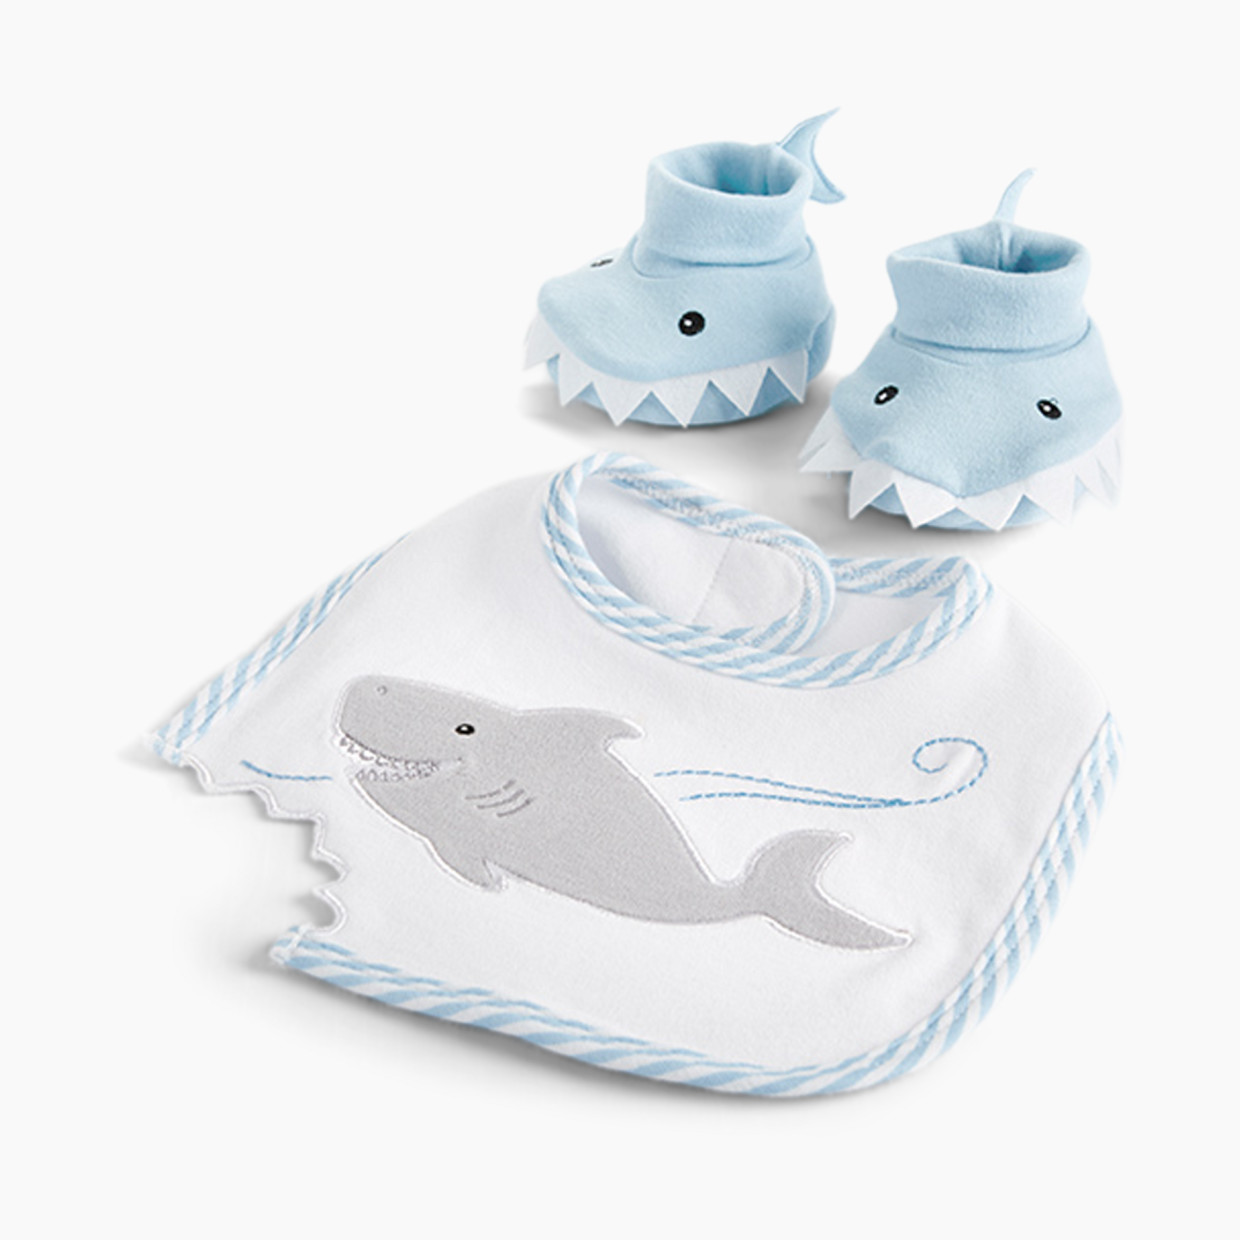 Baby Aspen "Chomp & Stomp" Shark Bib & Booties Gift Set - Blue, 0-9 Months.